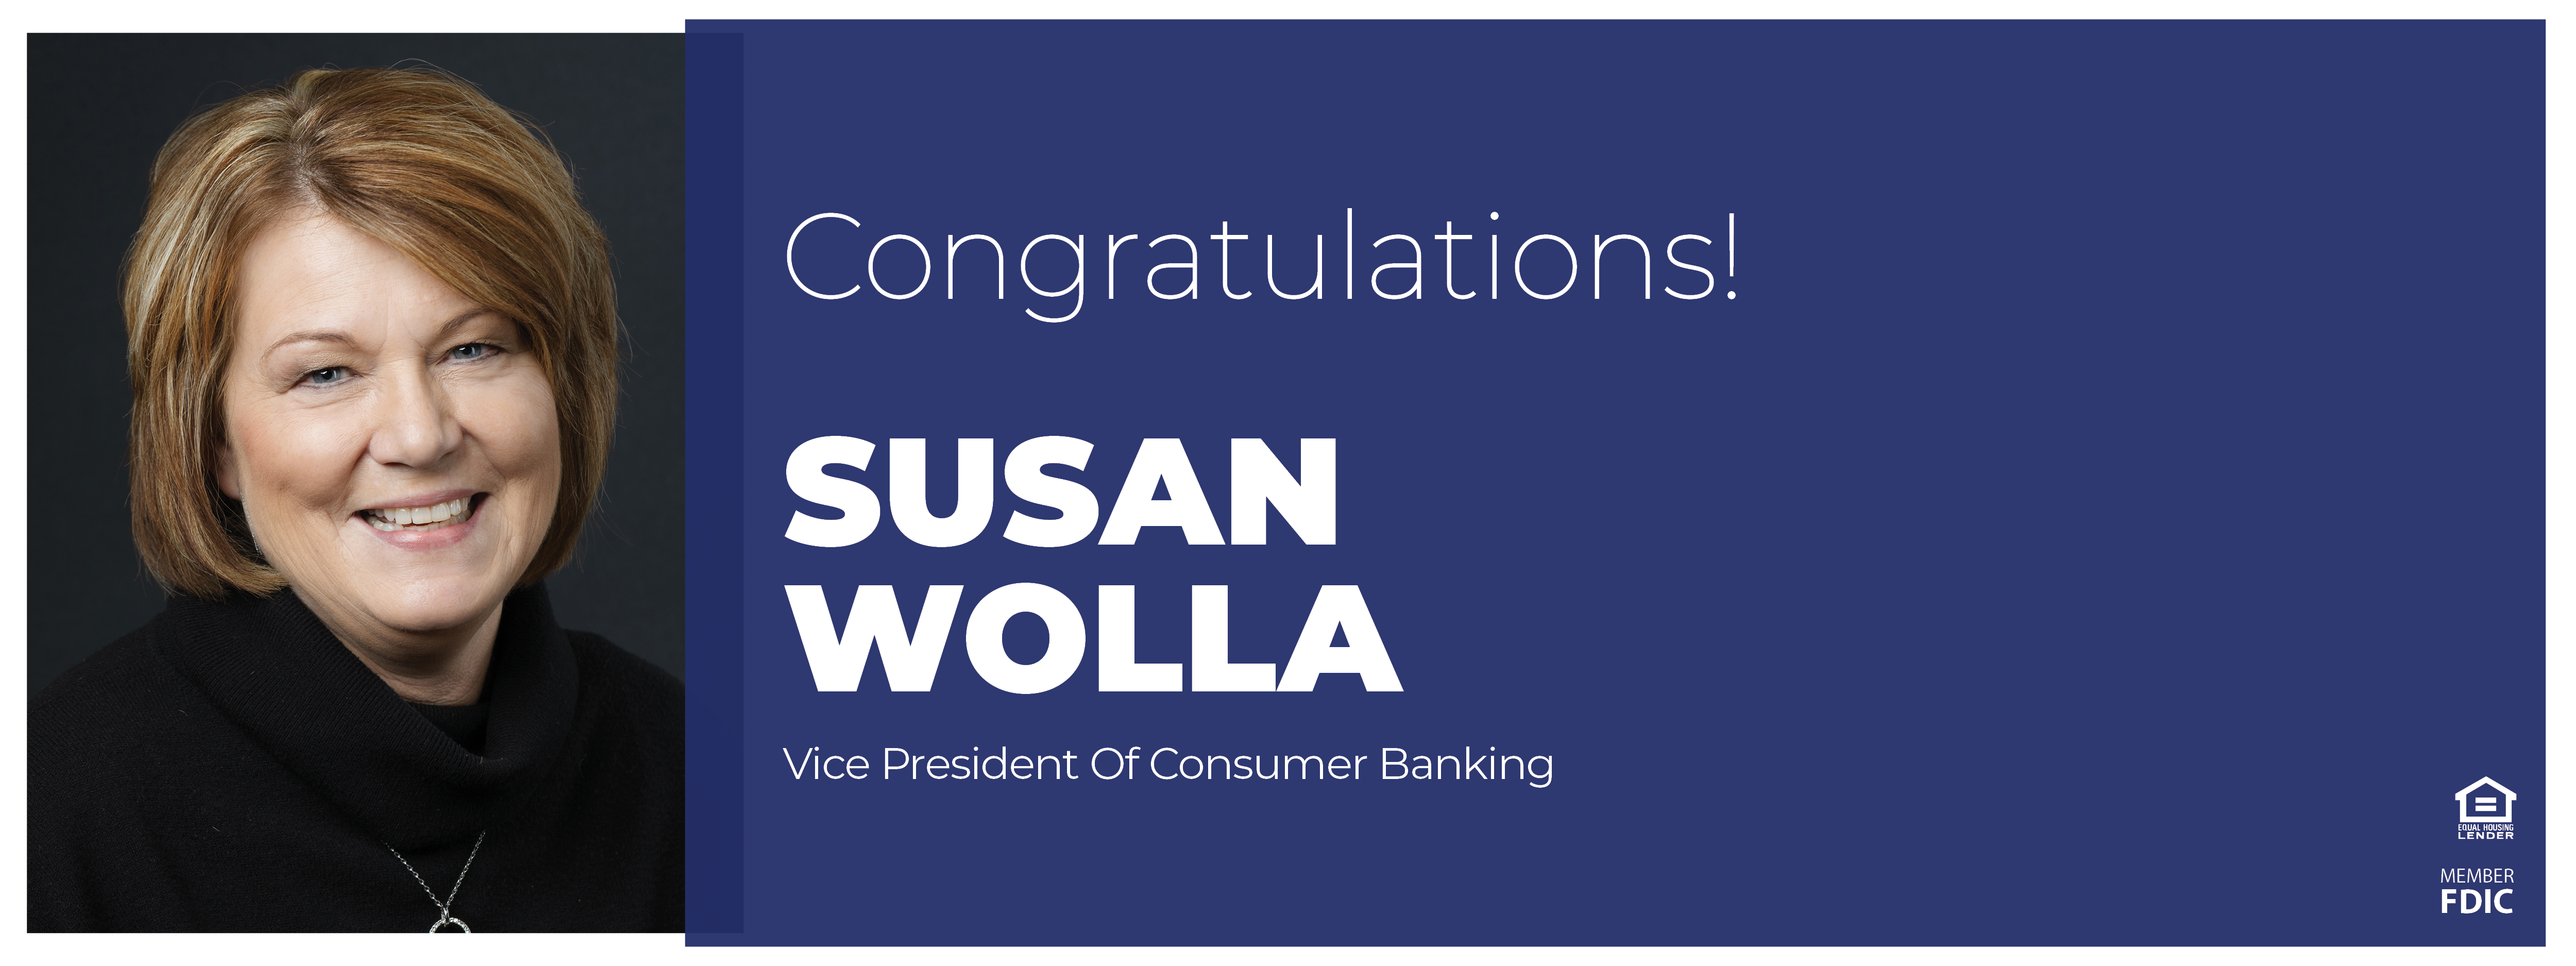 Congratulations Susan Wolla